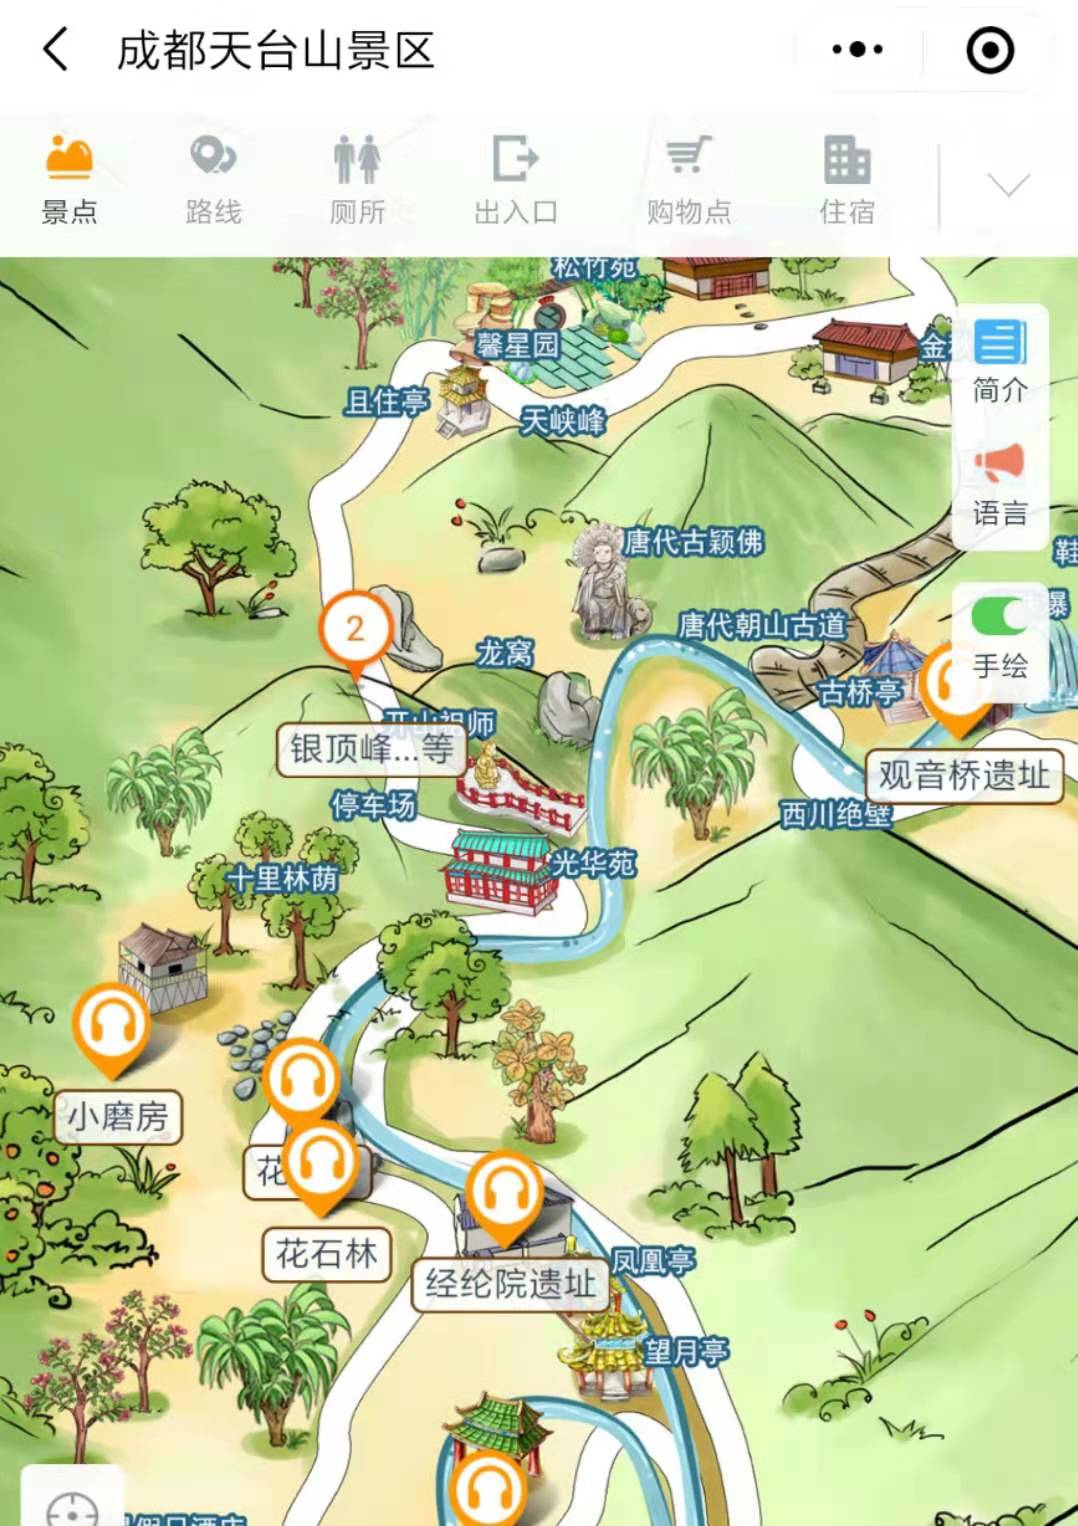 四川成都天台山景区手绘地图、语音讲解、电子导览等智能导览系统上线啦.jpg